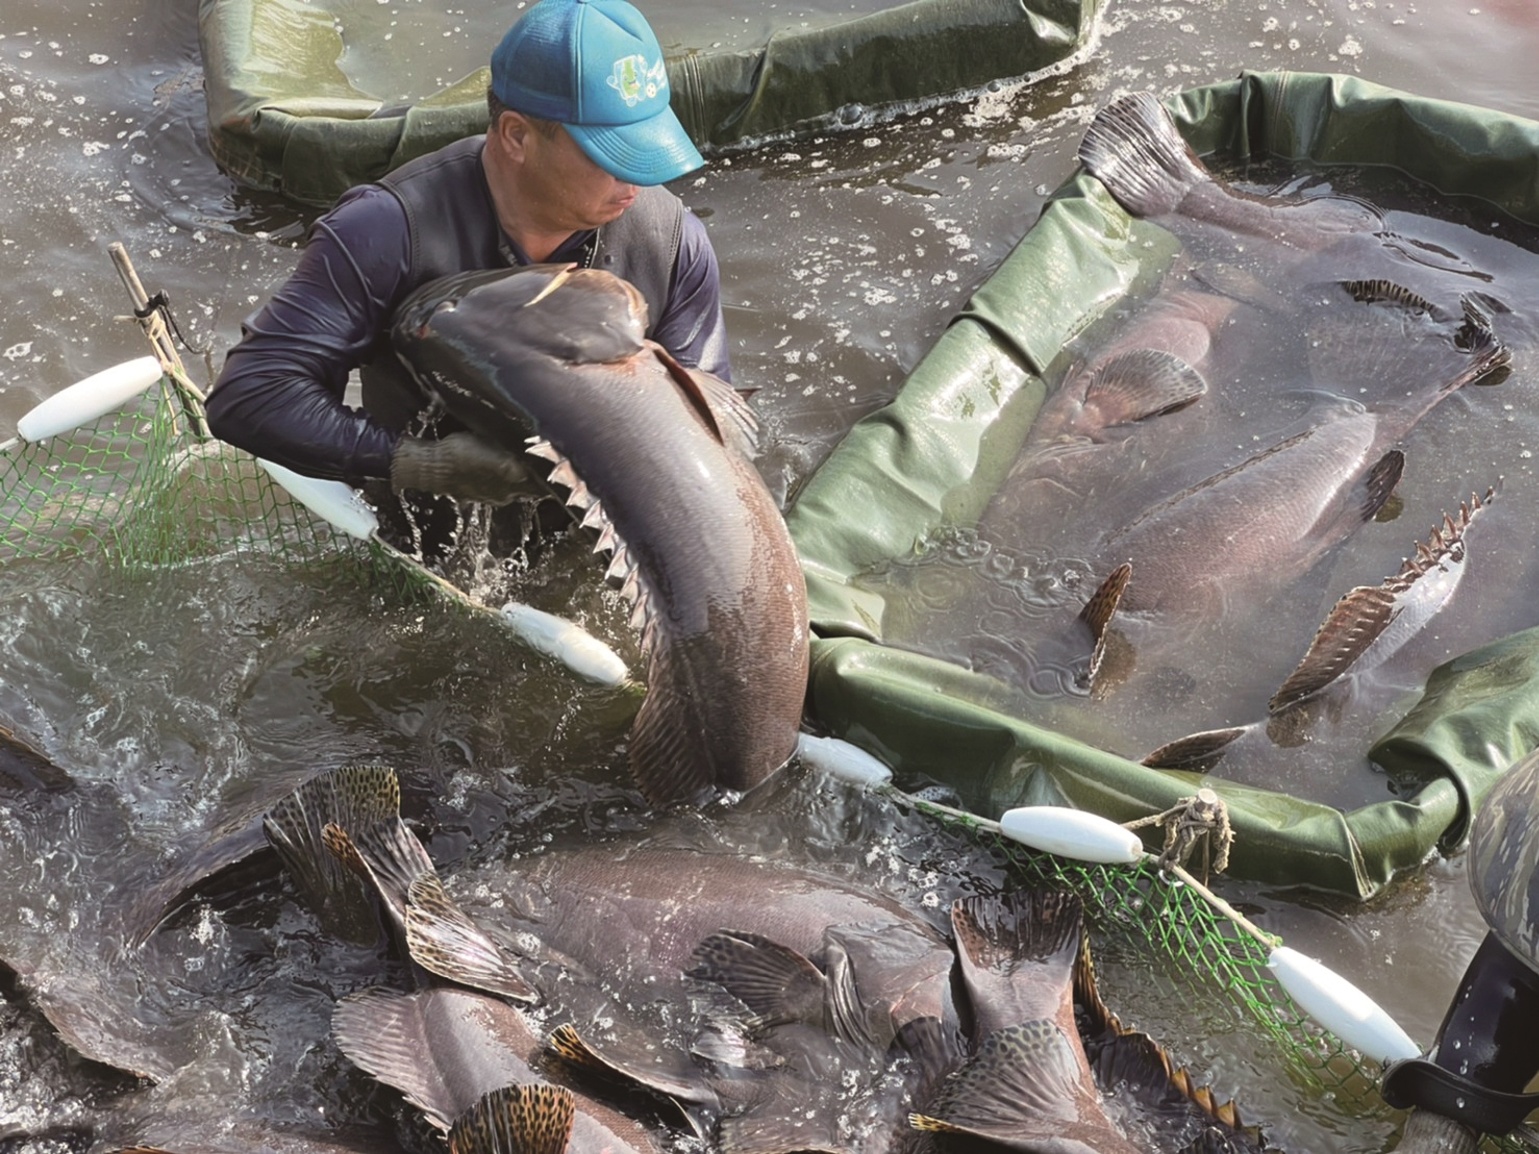 渔二代接手父亲鱼场  采用科技养殖龙胆石斑 - 农牧世界